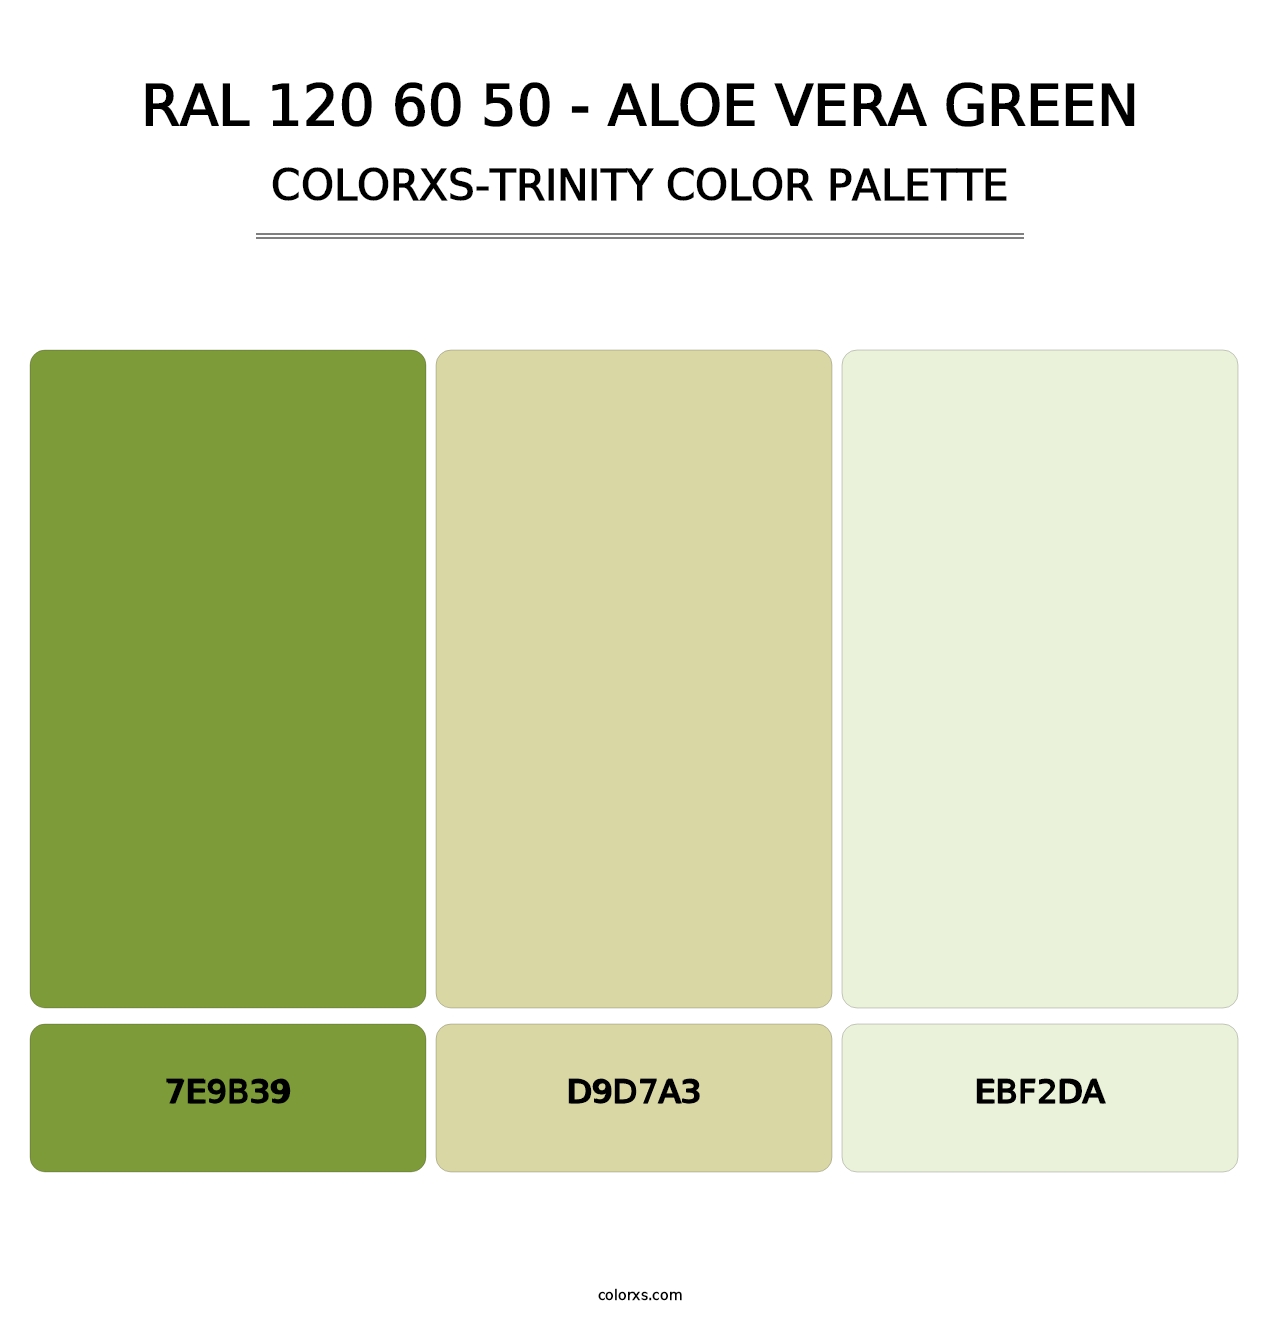 RAL 120 60 50 - Aloe Vera Green - Colorxs Trinity Palette